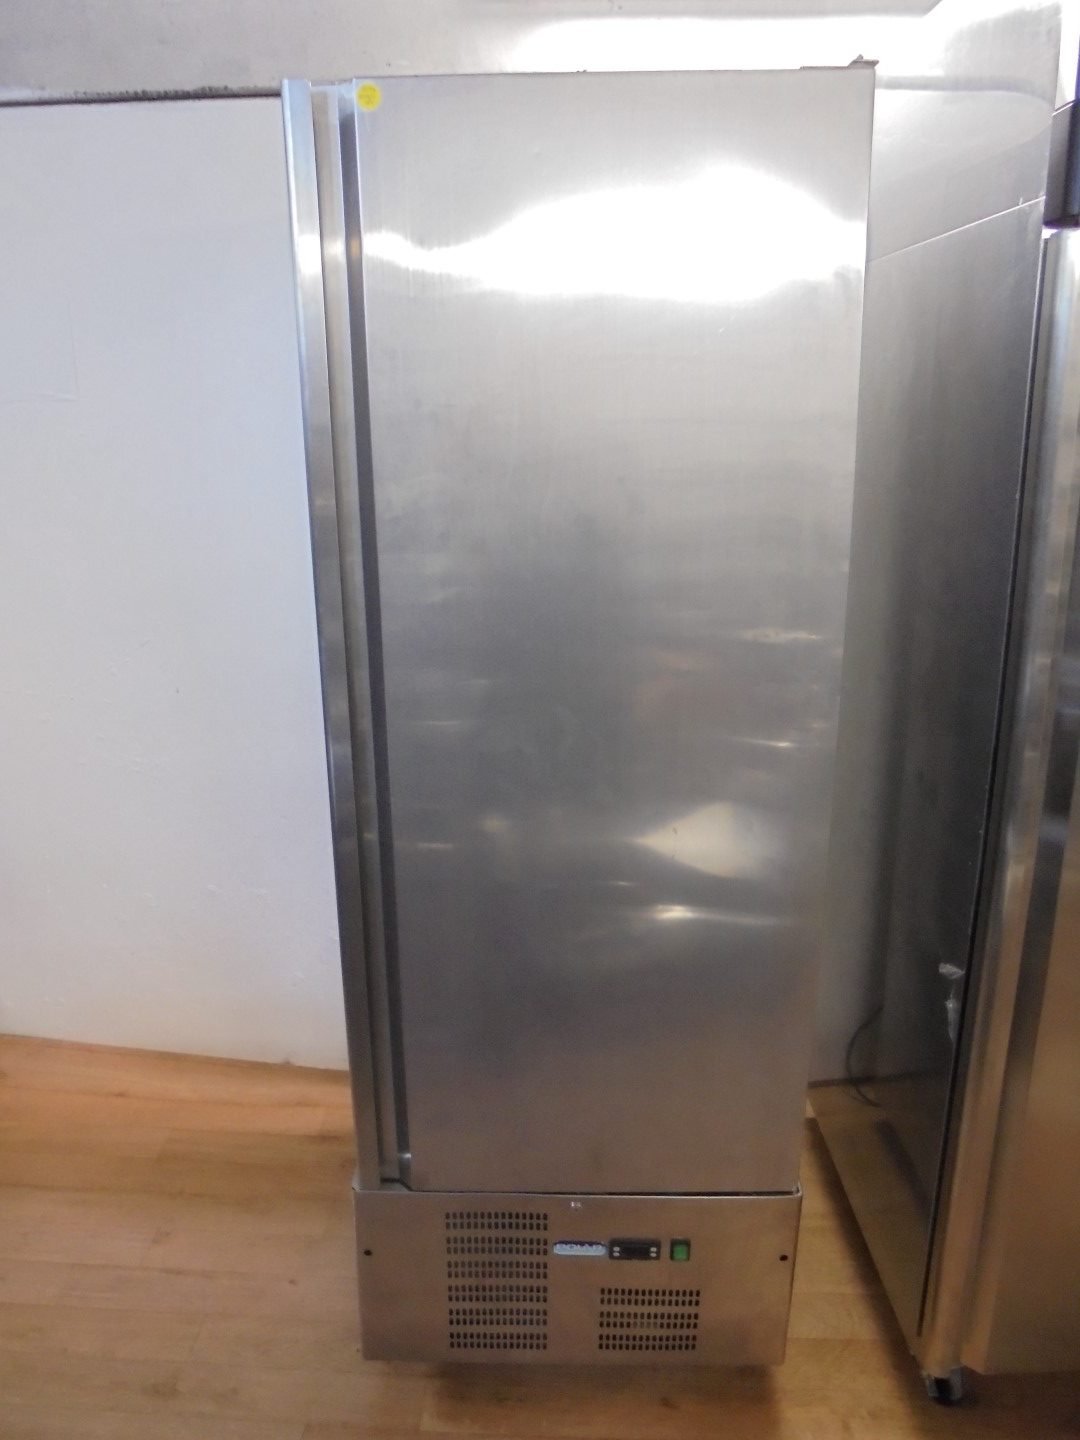 Stainless Steel Upright Freezer 70cmW x 70cmD x 193cmH